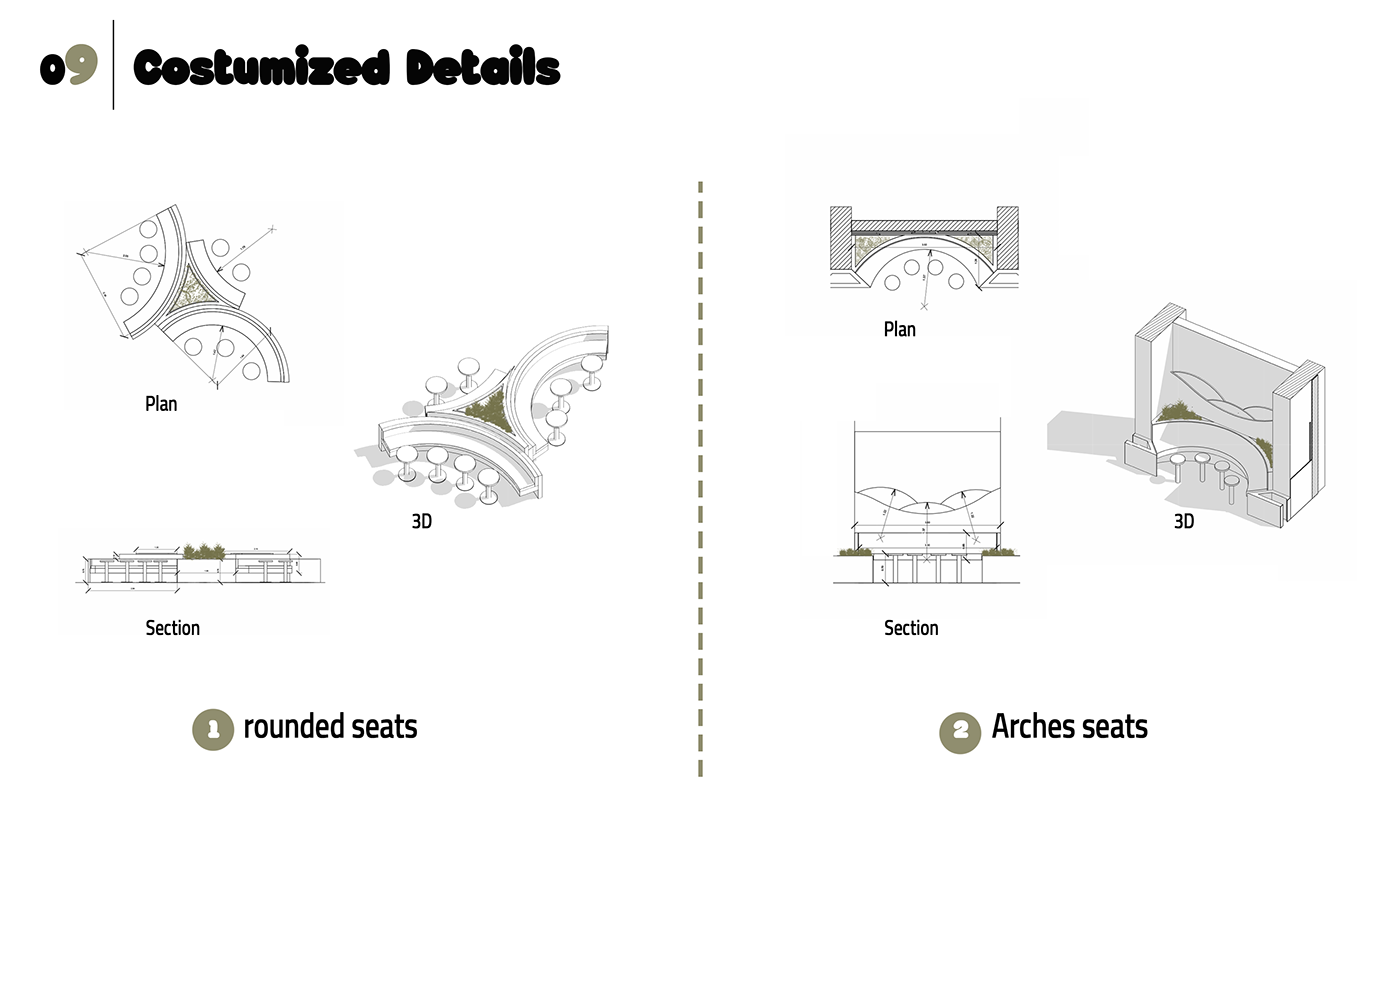 interior design  artist Digital Art  architecture eco arches 3ds max vray Render ecostyleinterior